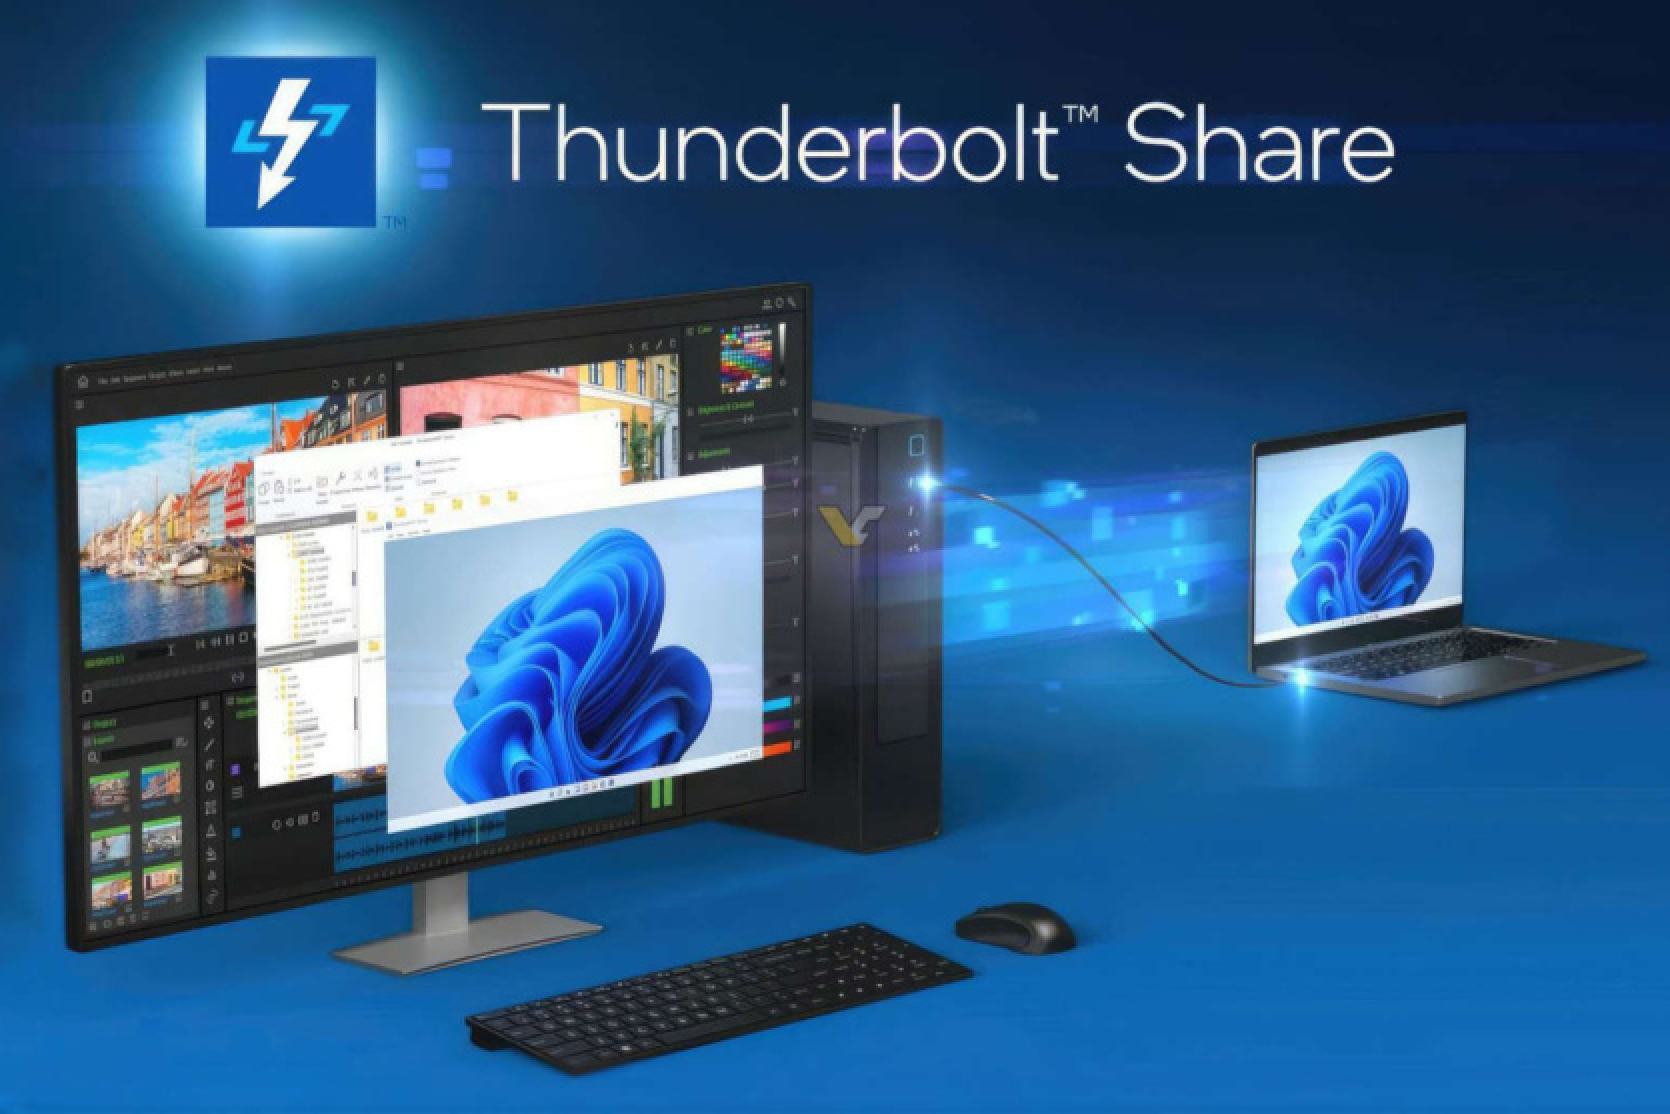 Intel iepazīstināja ar programmu Thunderbolt Share, kas ļauj viegli kopīgot failus un perifērijas ierīces vairākos datoros.